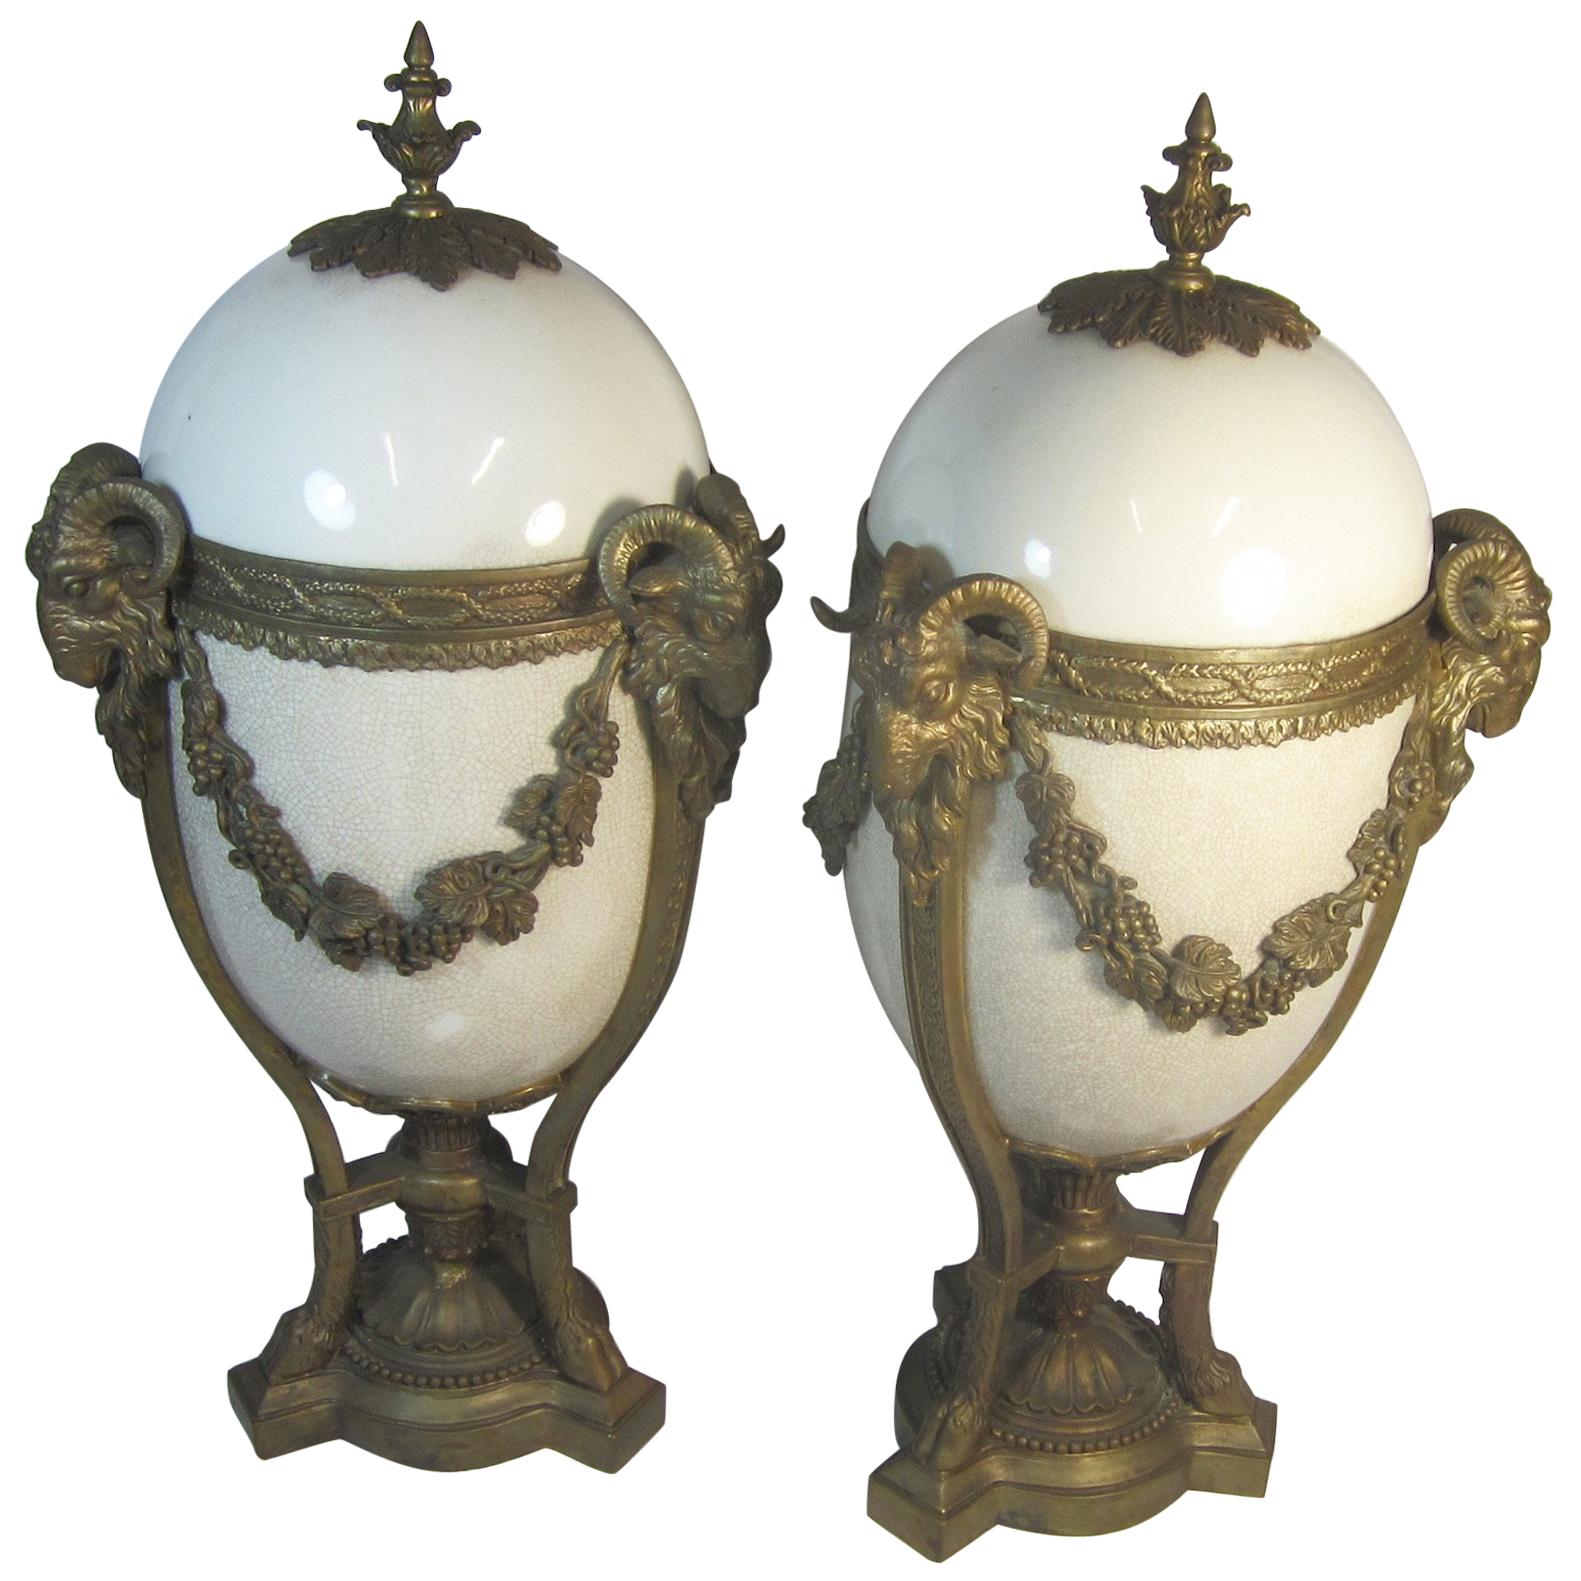 French Ceramic and Ormolu Lidded Urn